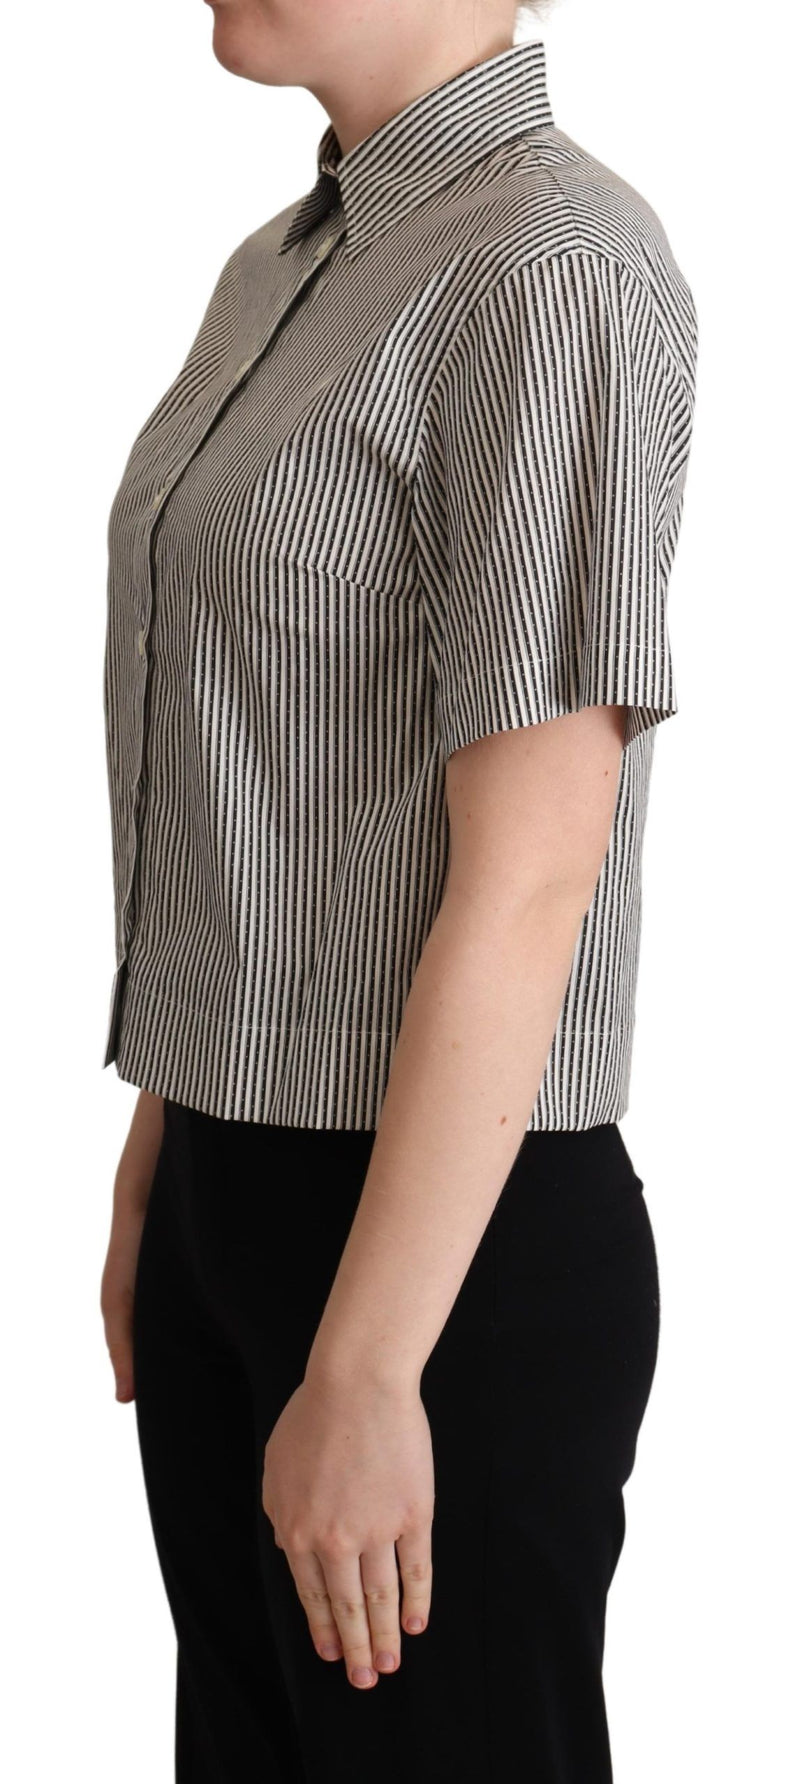 Dolce & Gabbana White Black Striped Cotton Women's Shirt